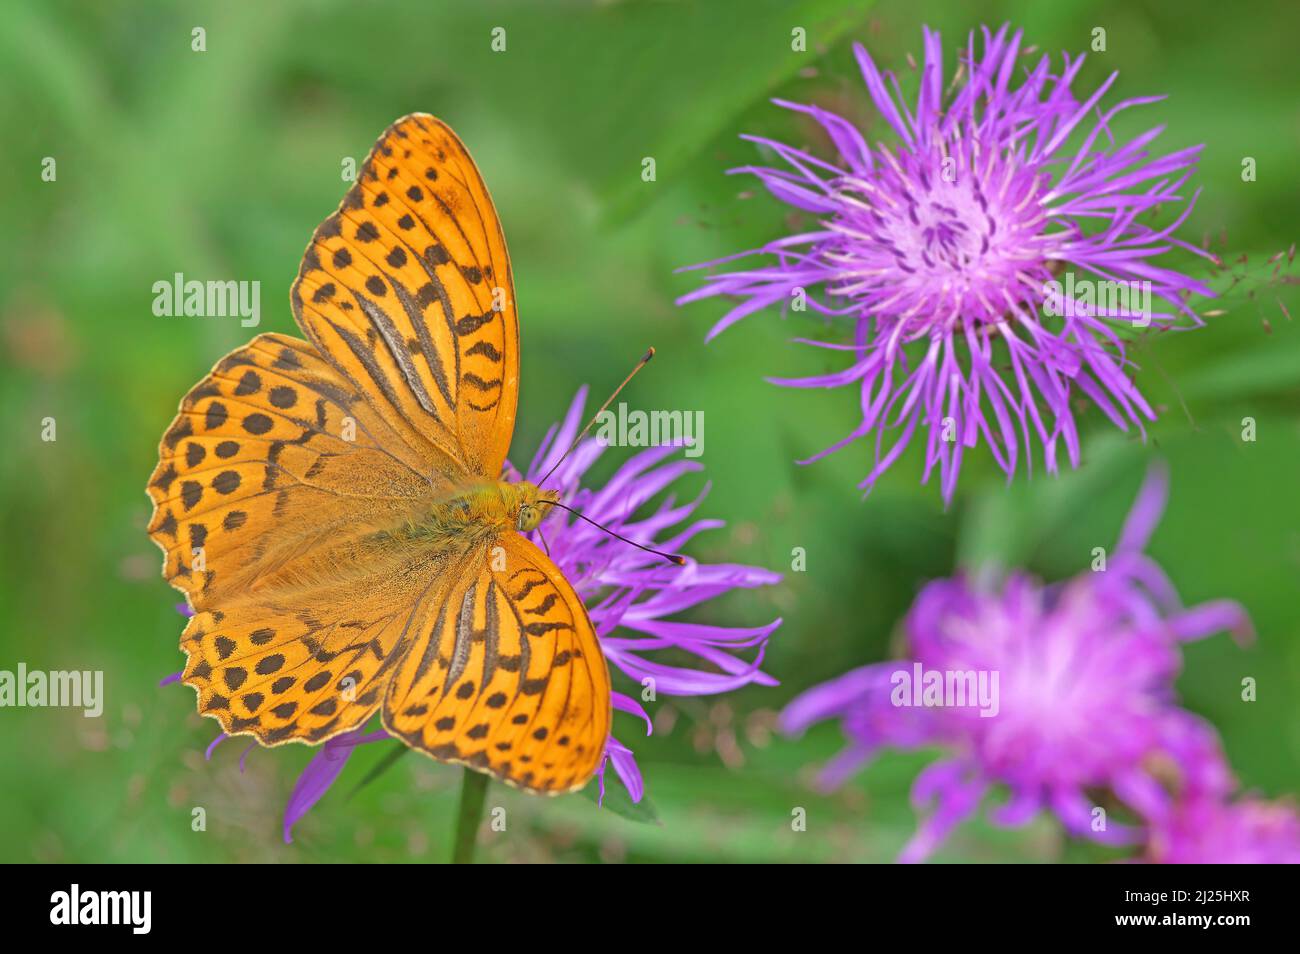 Le papillon fritillaire lavé à l'argent (Argynnis paphia) boit le nectar d'une fleur de la Knapweed (Centaurea jacea). Autriche Banque D'Images